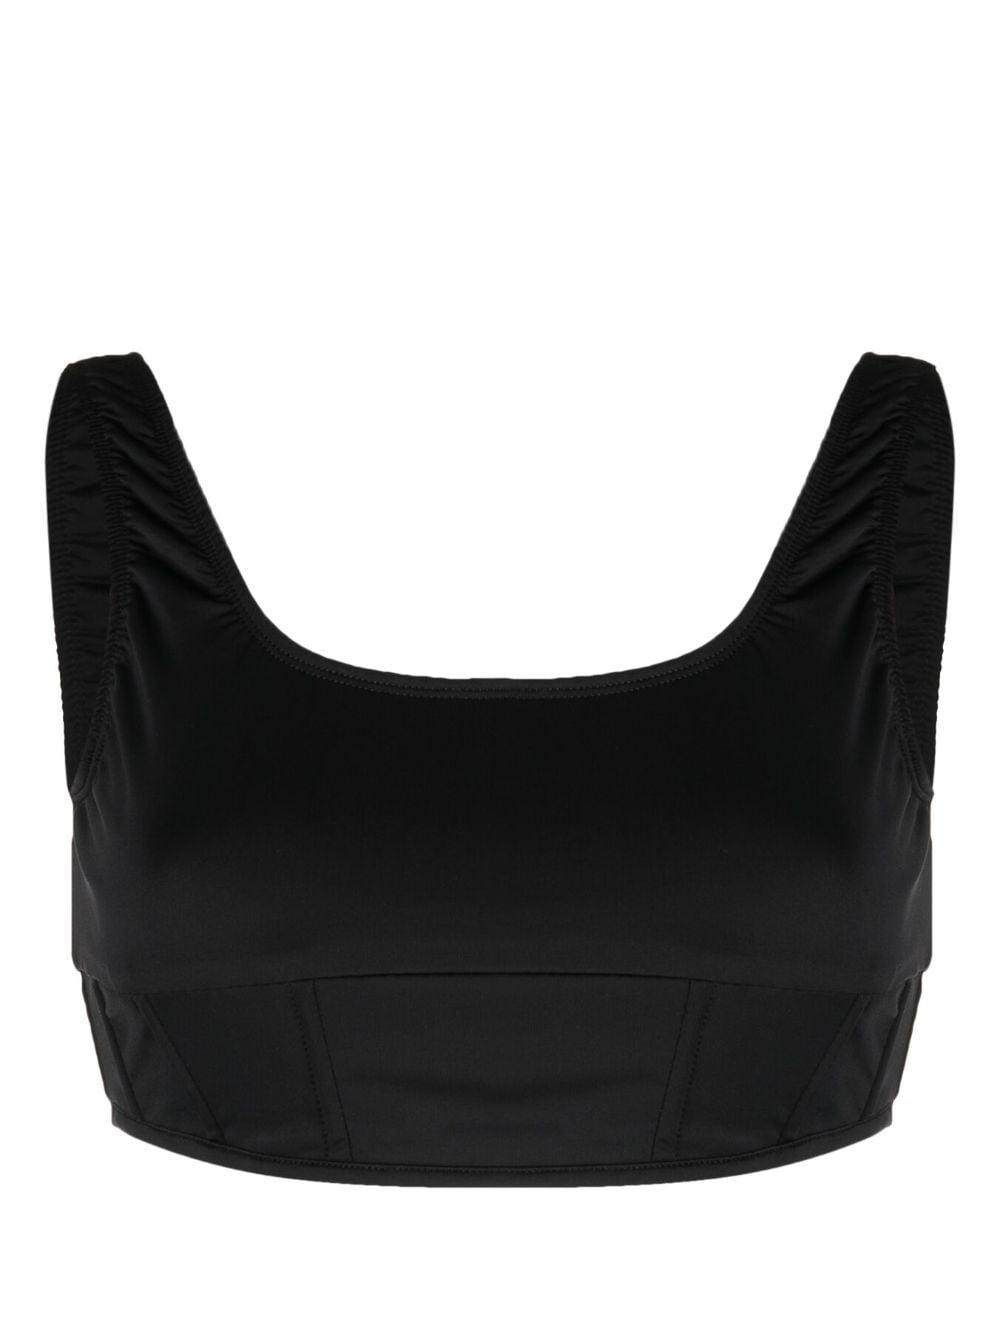 Natasha Zinko Corset-style Bikini Top in Black | Lyst